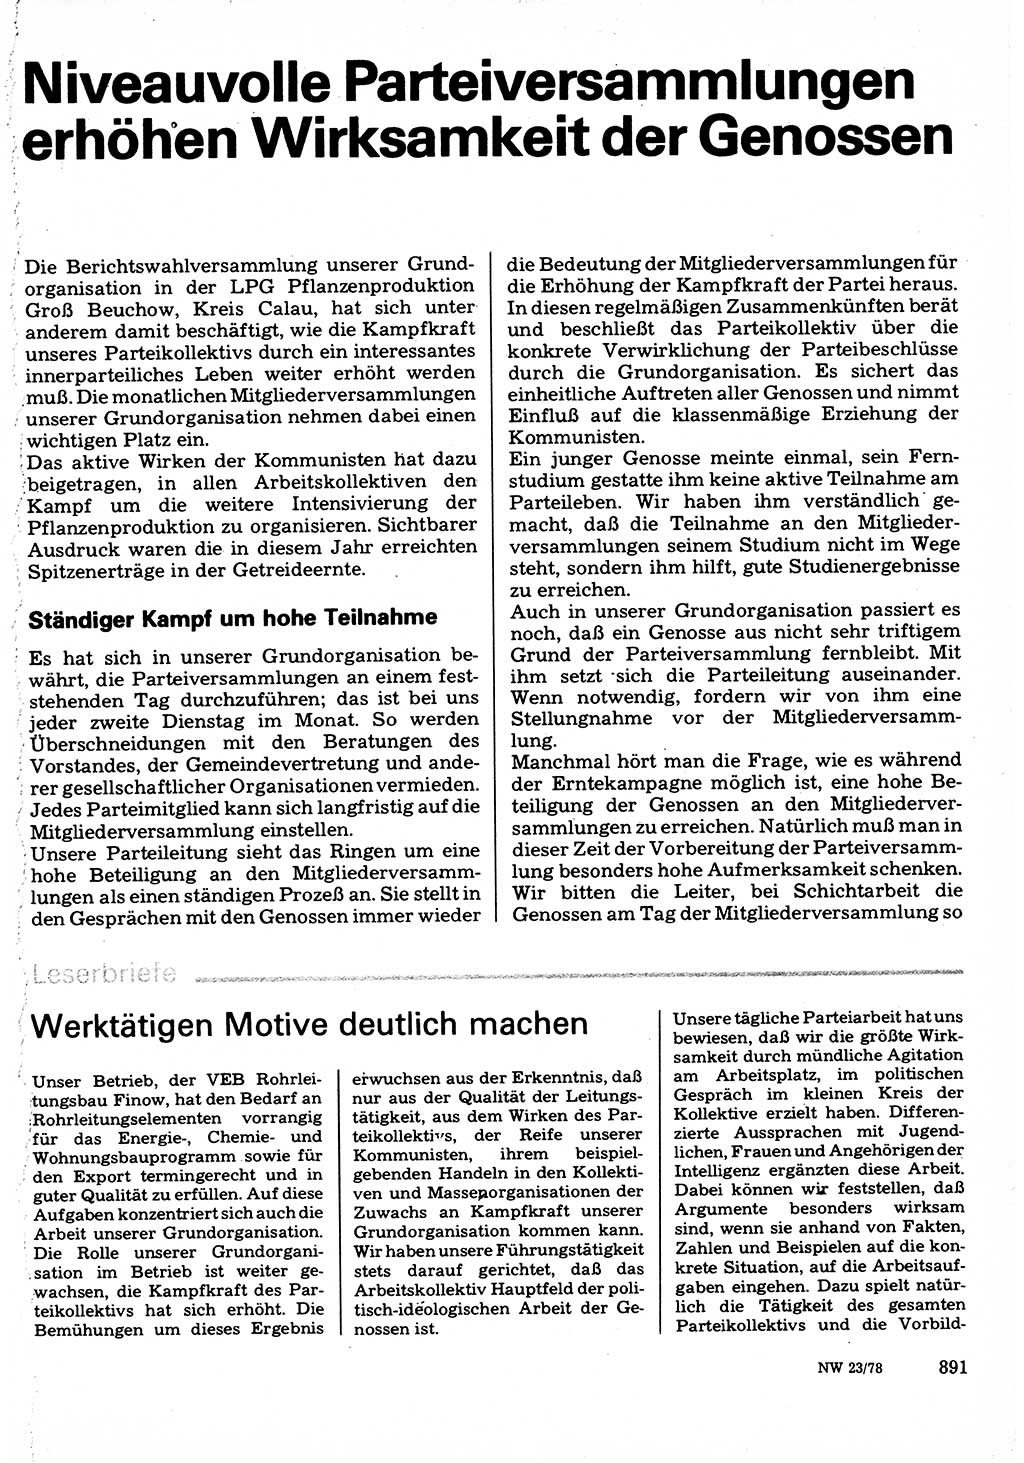 Neuer Weg (NW), Organ des Zentralkomitees (ZK) der SED (Sozialistische Einheitspartei Deutschlands) für Fragen des Parteilebens, 33. Jahrgang [Deutsche Demokratische Republik (DDR)] 1978, Seite 891 (NW ZK SED DDR 1978, S. 891)